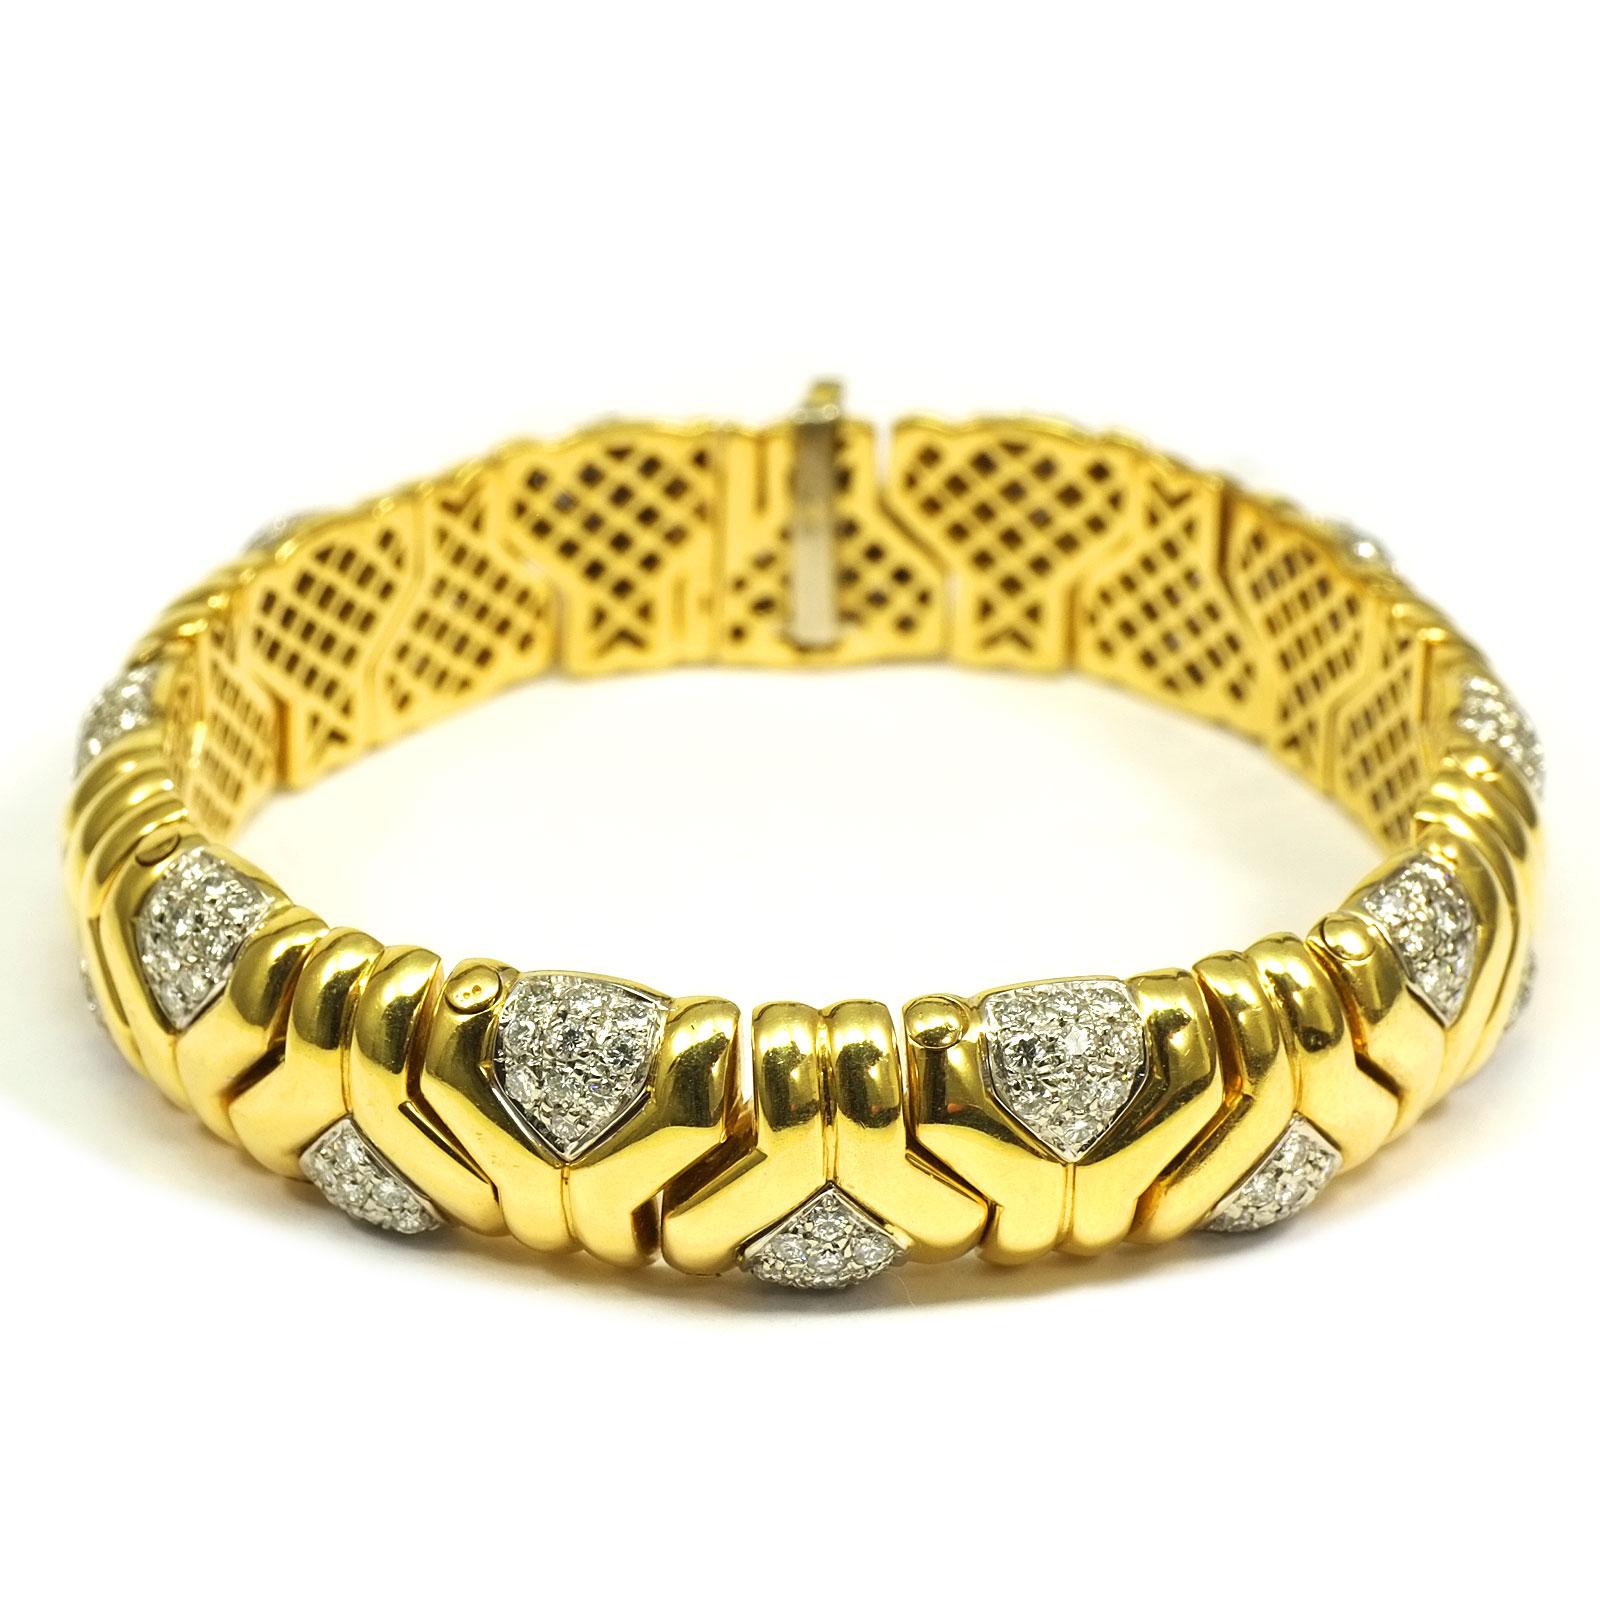 bracelet à maillons fantaisie en or jaune 18 carats avec diamants 4 carats

Un bracelet à maillons élégant et sportif avec un décor géométrique. 200 diamants brillants d'un total de 4 ct ornent les différents segments. Les diamants sont sertis dans